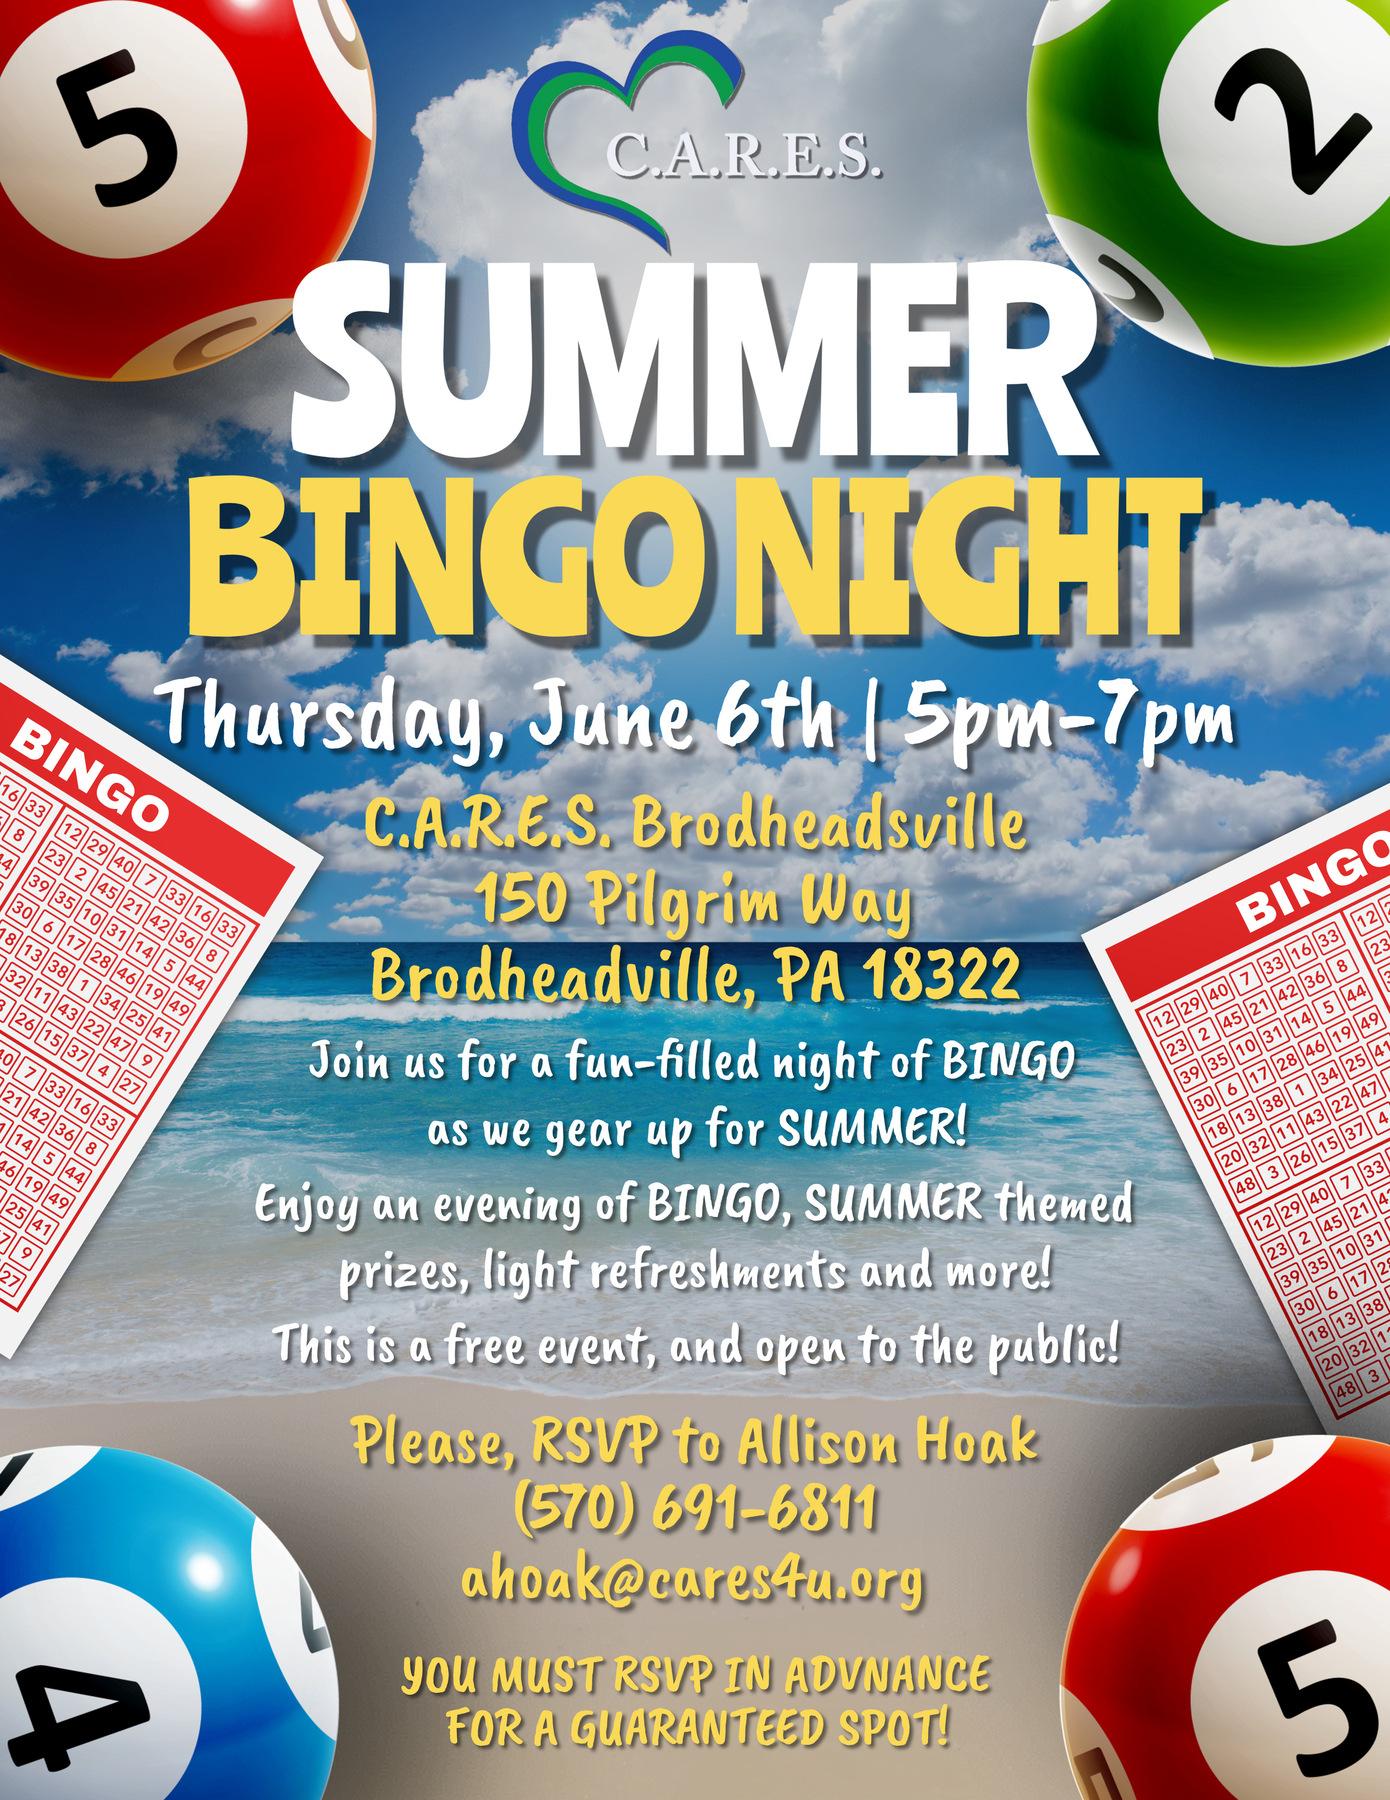 C.A.R.E.S. Summer Bingo Night - Brodheadsville 3